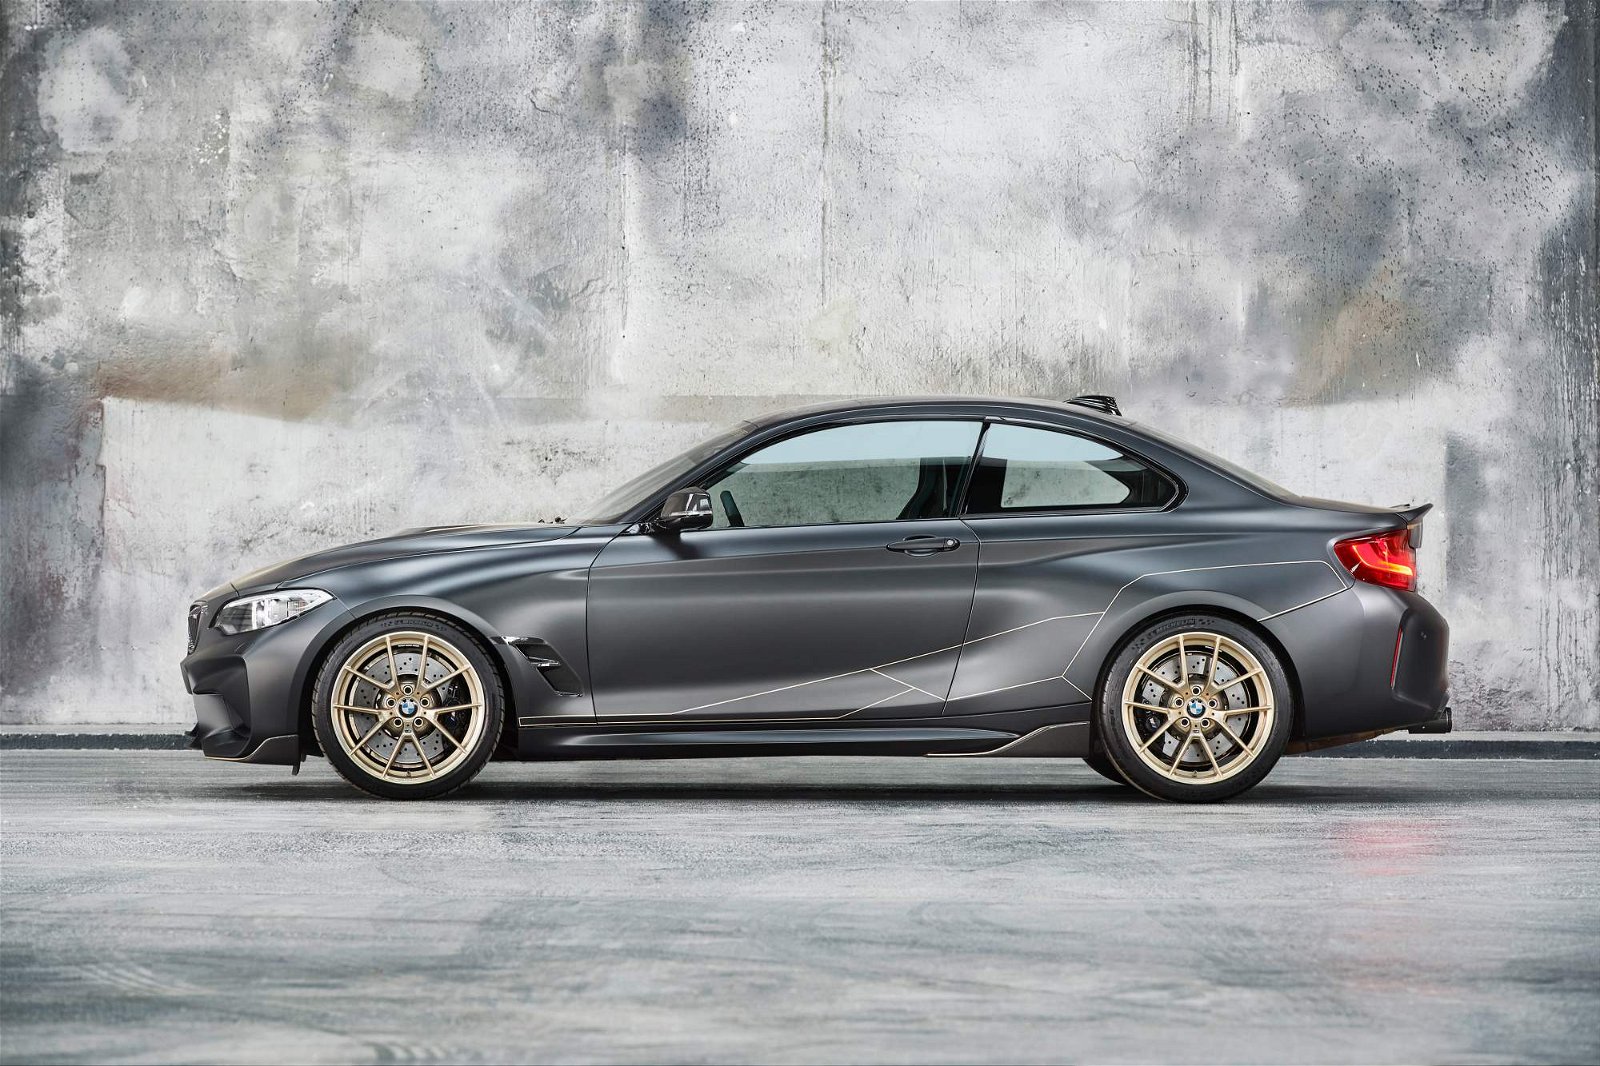 BMW-M-Performance-Parts-Concept-7